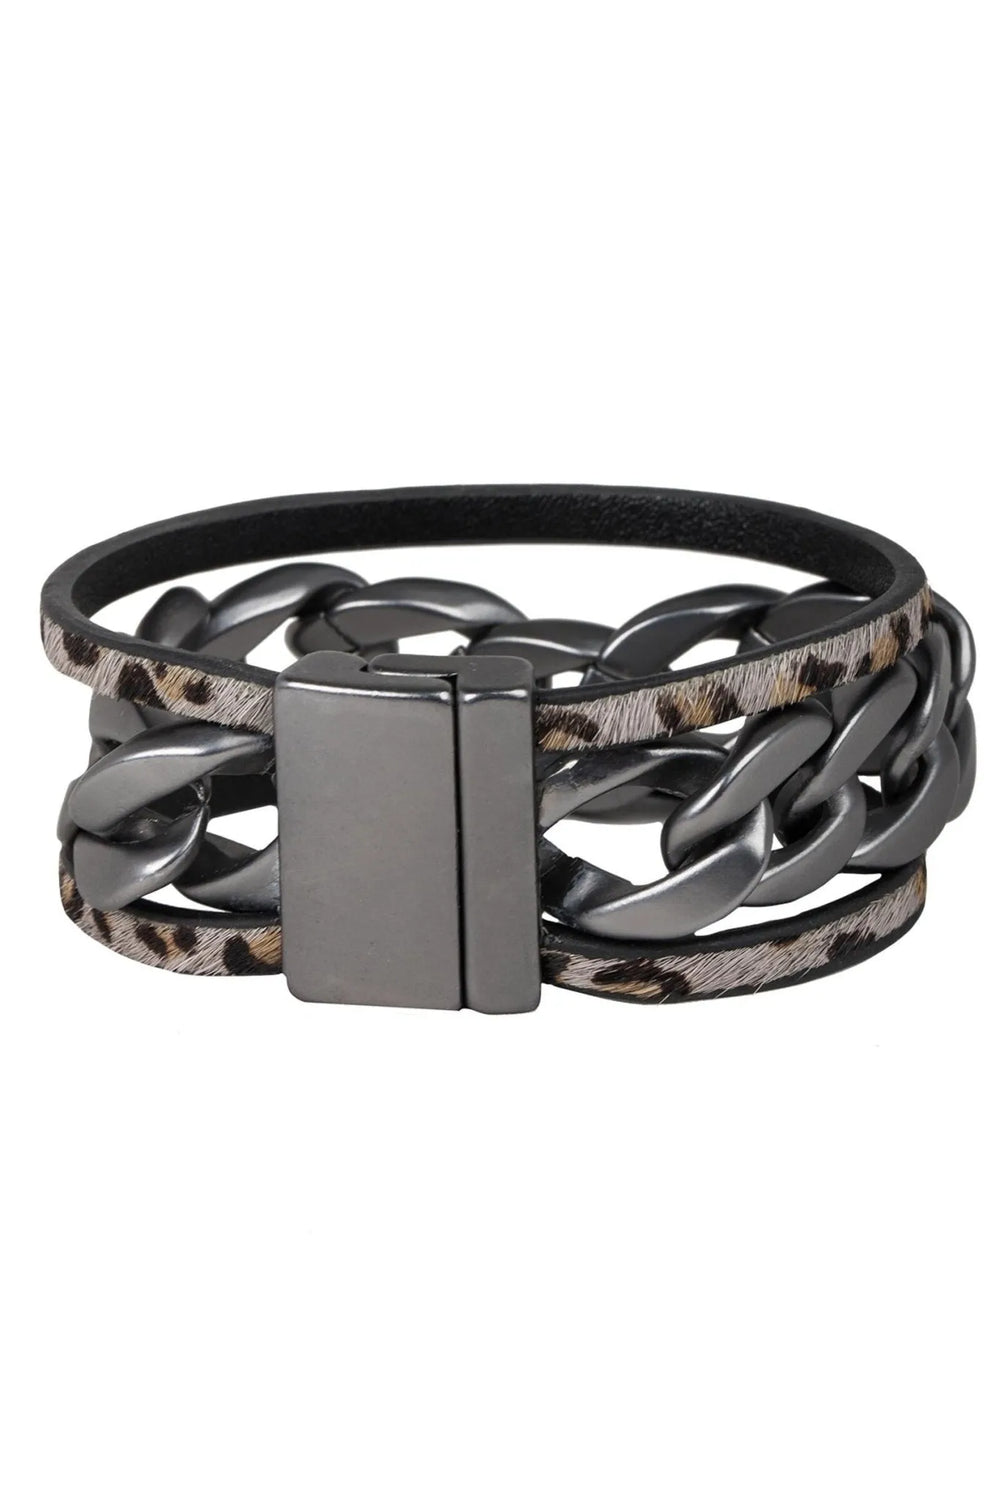 Strongest Link Leather Bracelet Black